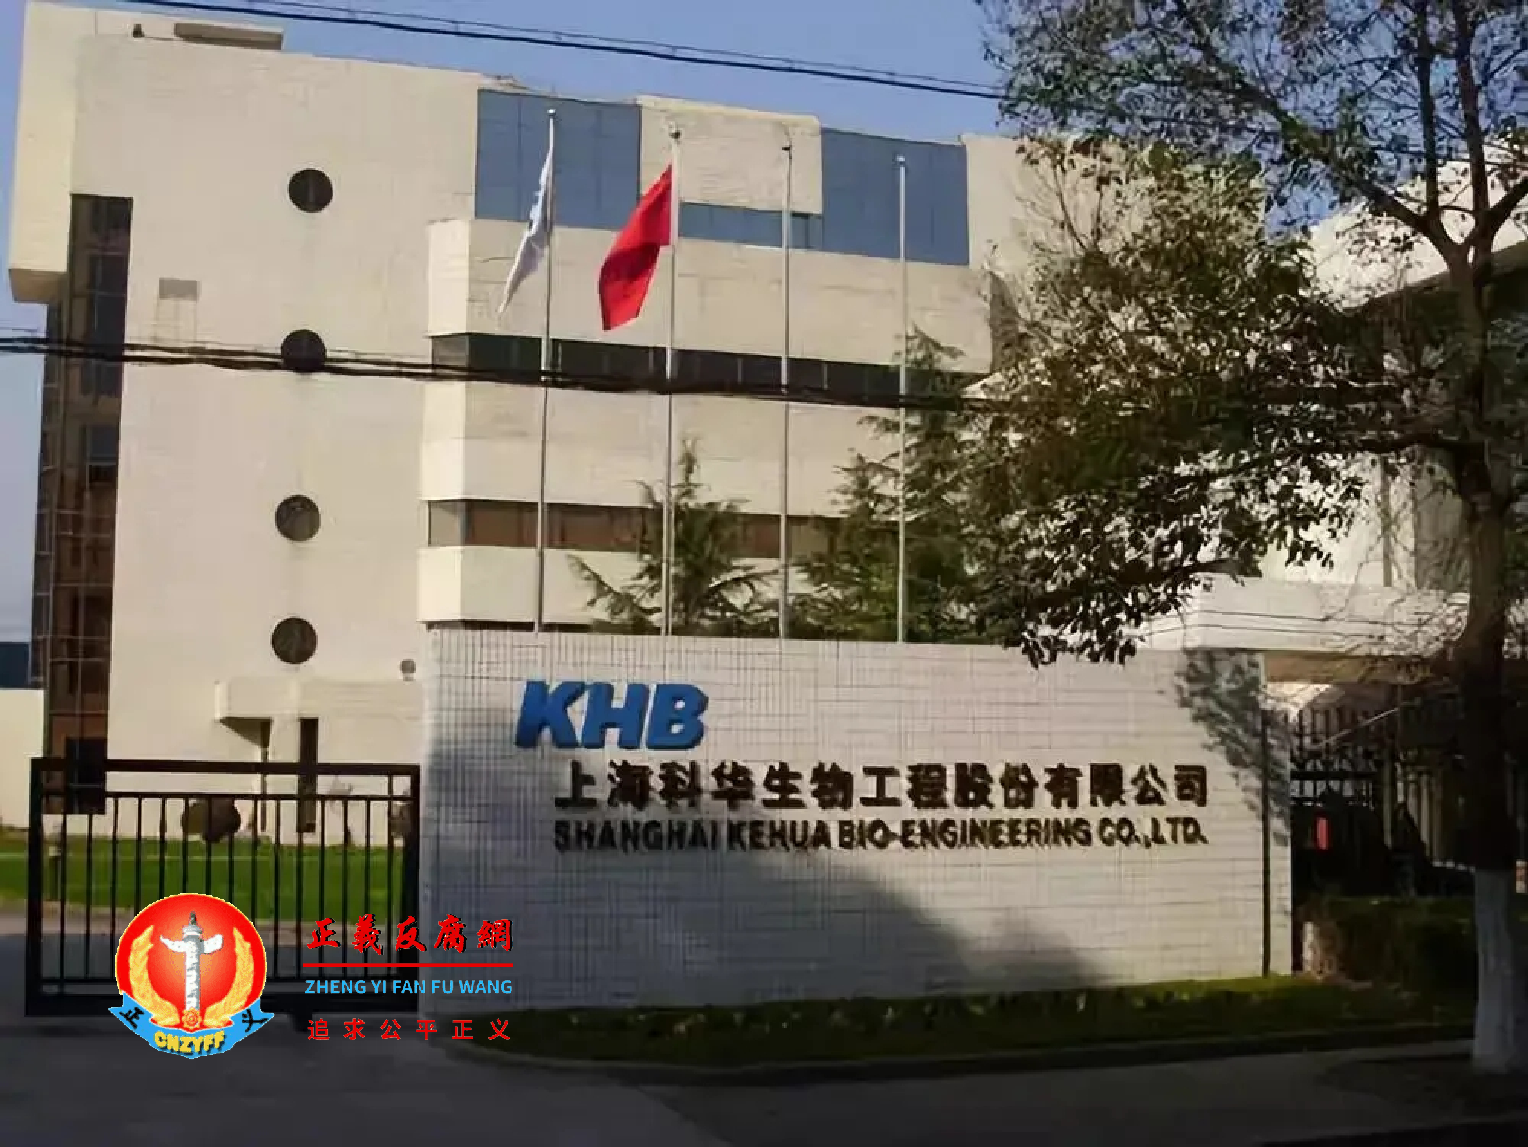 上海科华生物工程股份有限公司。.png